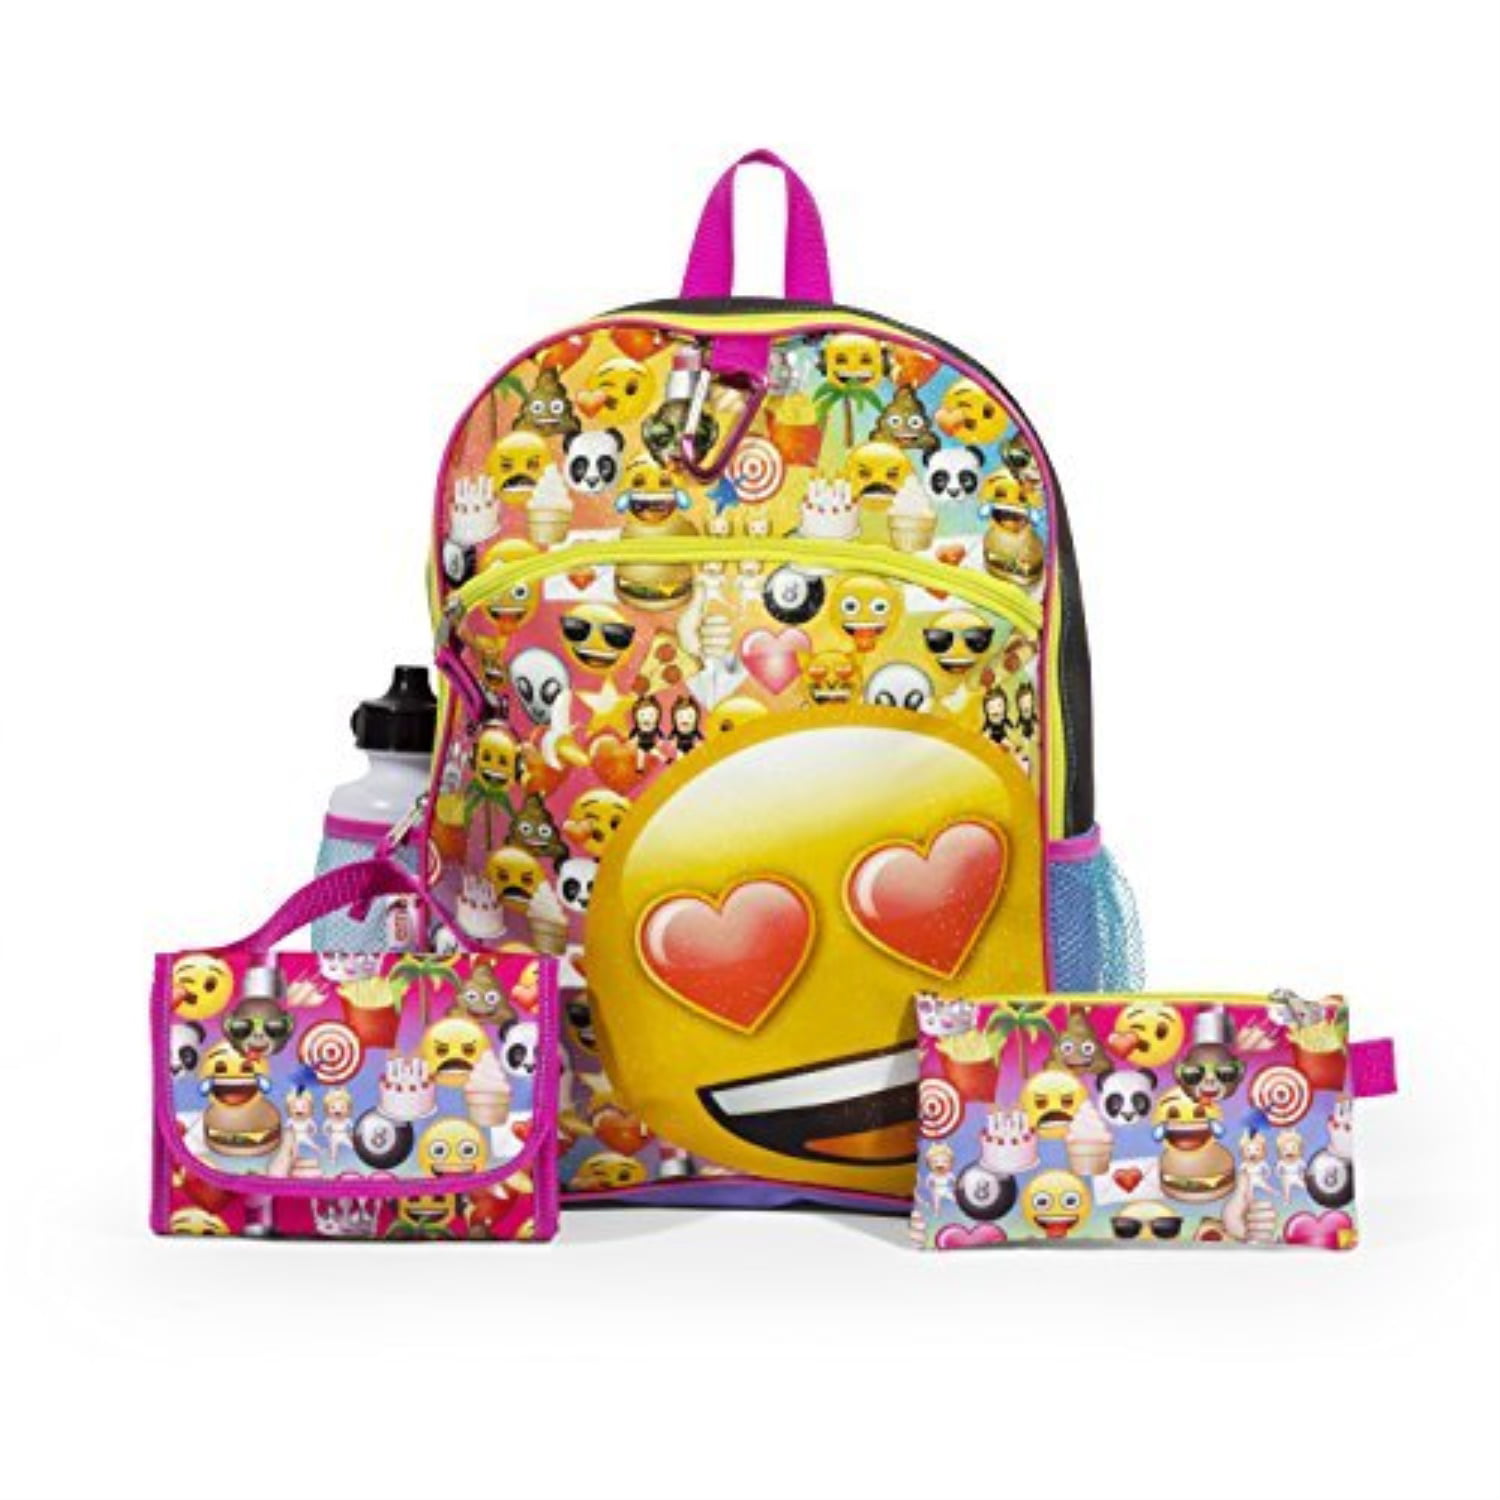 Emoji Smile Backpack Rucksack Messenger School Travel Gym Holiday Bag ORIGINAL 